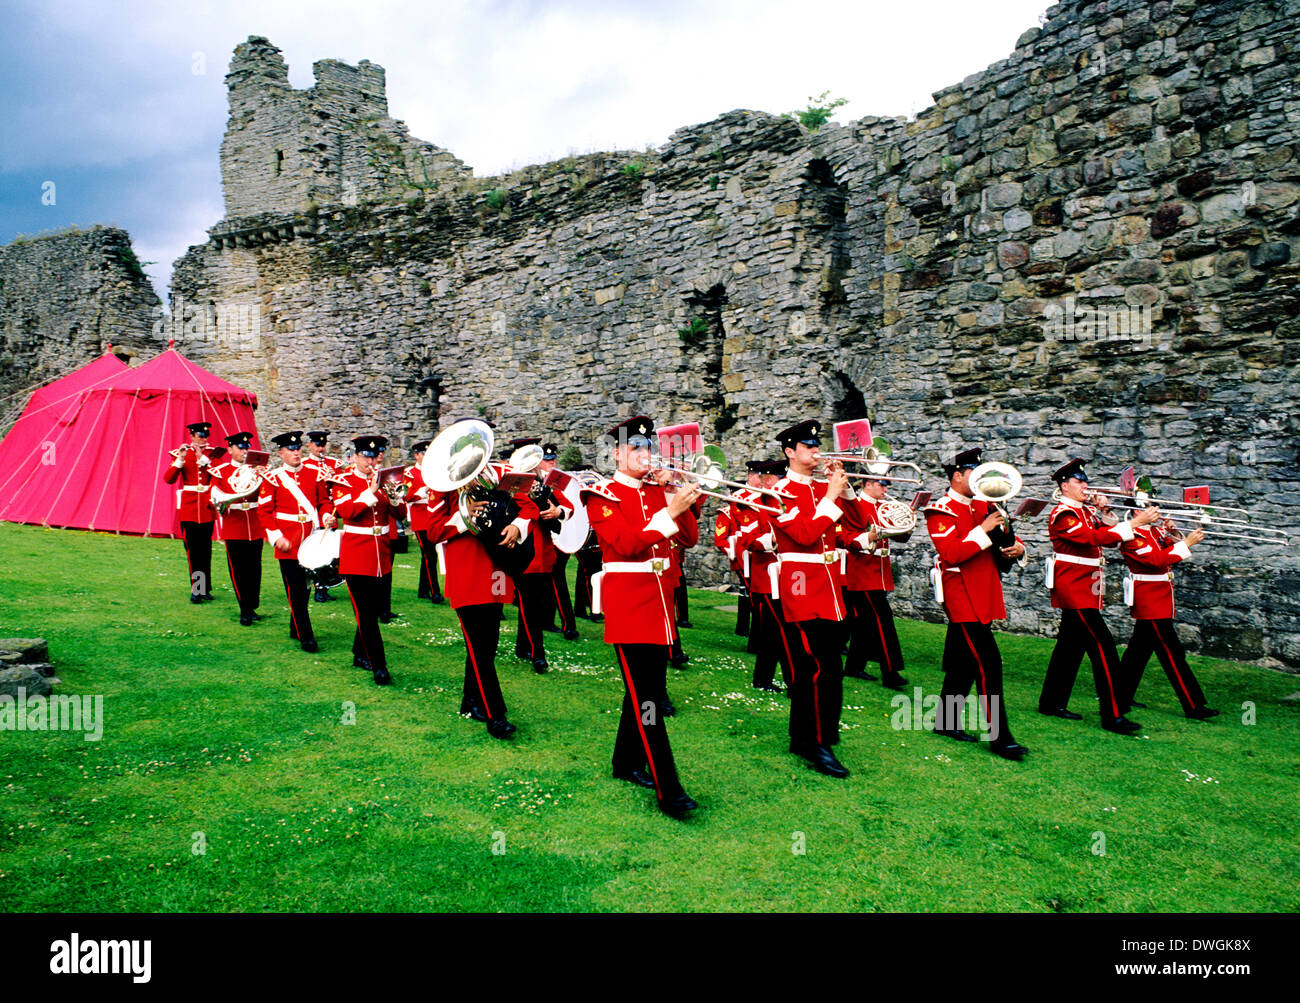 Britische militärische marschieren Normandie Brass Band, Richmond Castle, Yorkshire England UK Soldat Soldaten marschieren Armee Reenactment einheitliche Uniformen Musikinstrument Musikinstrumente Stockfoto